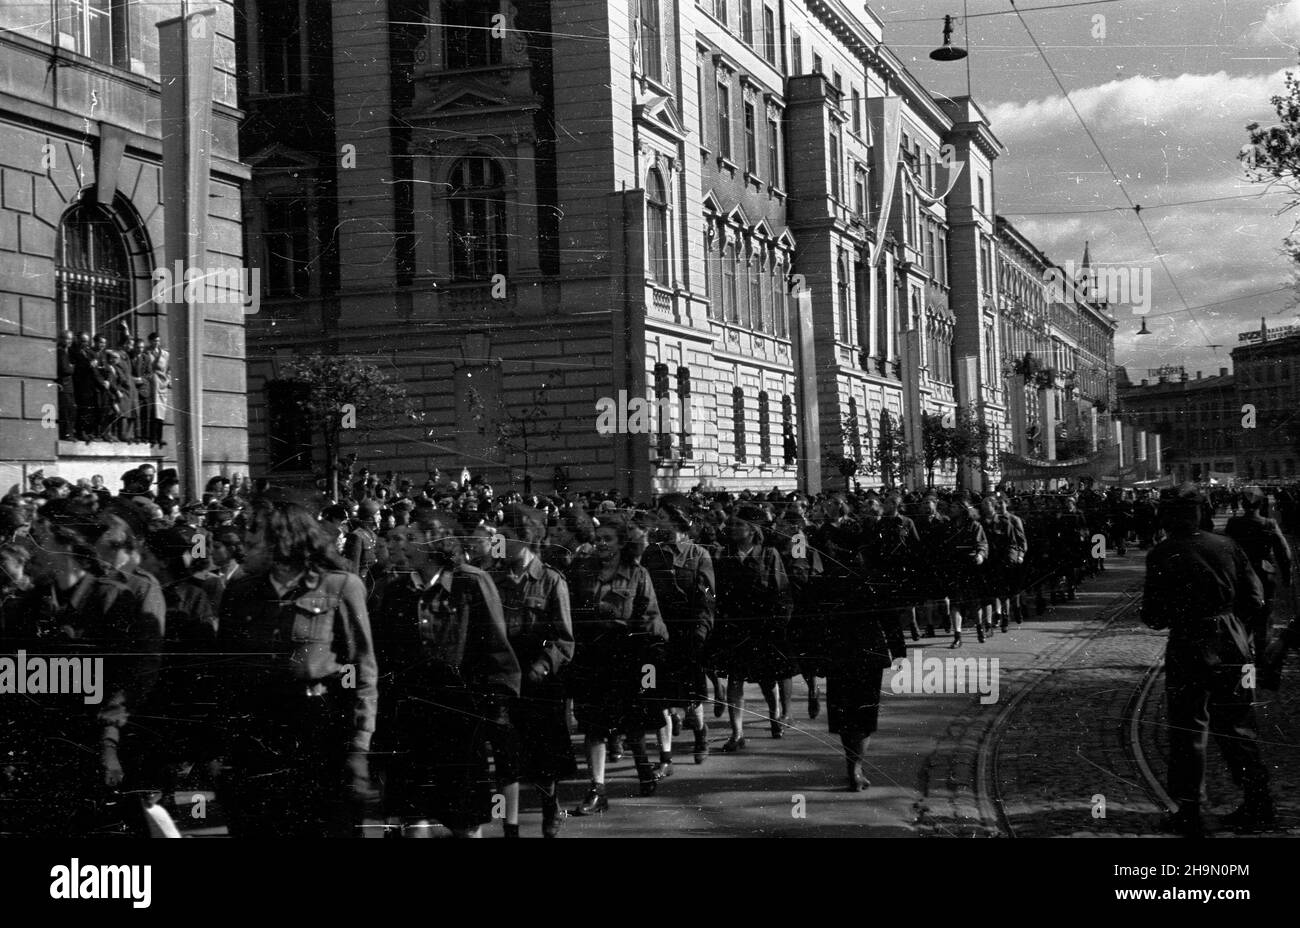 Kraków, 1948-10-10. Centralne obchody pi¹tej rocznicy bitwy pod Lenino zakoñczy³a defilada z udzia³em 70 tys. uczestników. Nz. ulic¹ Basztow¹ defiluj¹ oddzia³y Powszechnej Organizacji S³u¿ba Polsce.  mw  PAP      Cracow, Oct. 10, 1948. Central ceremonies marking the 5th anniversary of the Battle of Lenino ended in a parade that attracted 70,000 participants. Pictured: units of Service to Poland (Sluzba Polsce) mass organisation march along Basztowa Street.  mw  PAP Stock Photo